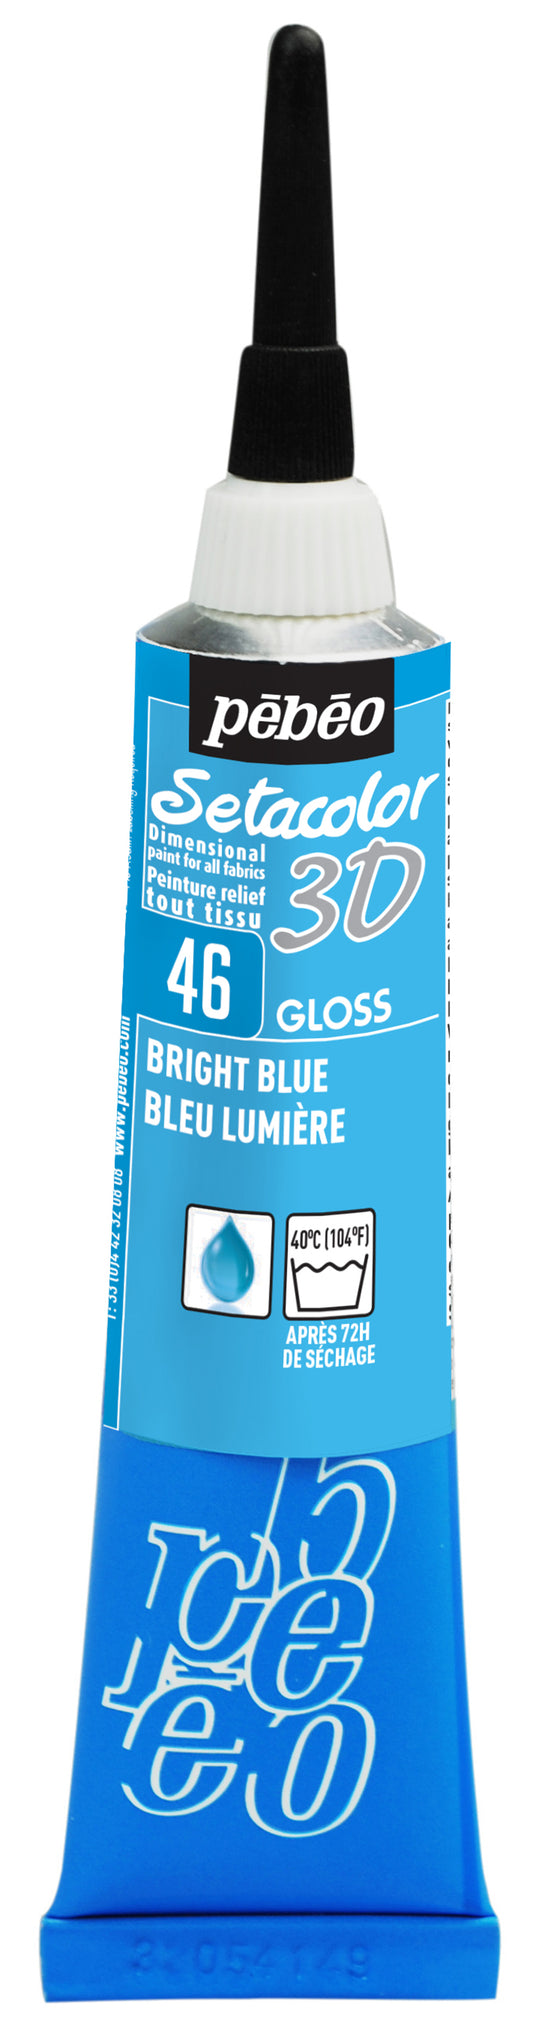 Setacolor 3D Brilliant Col. 46 Light Blue**